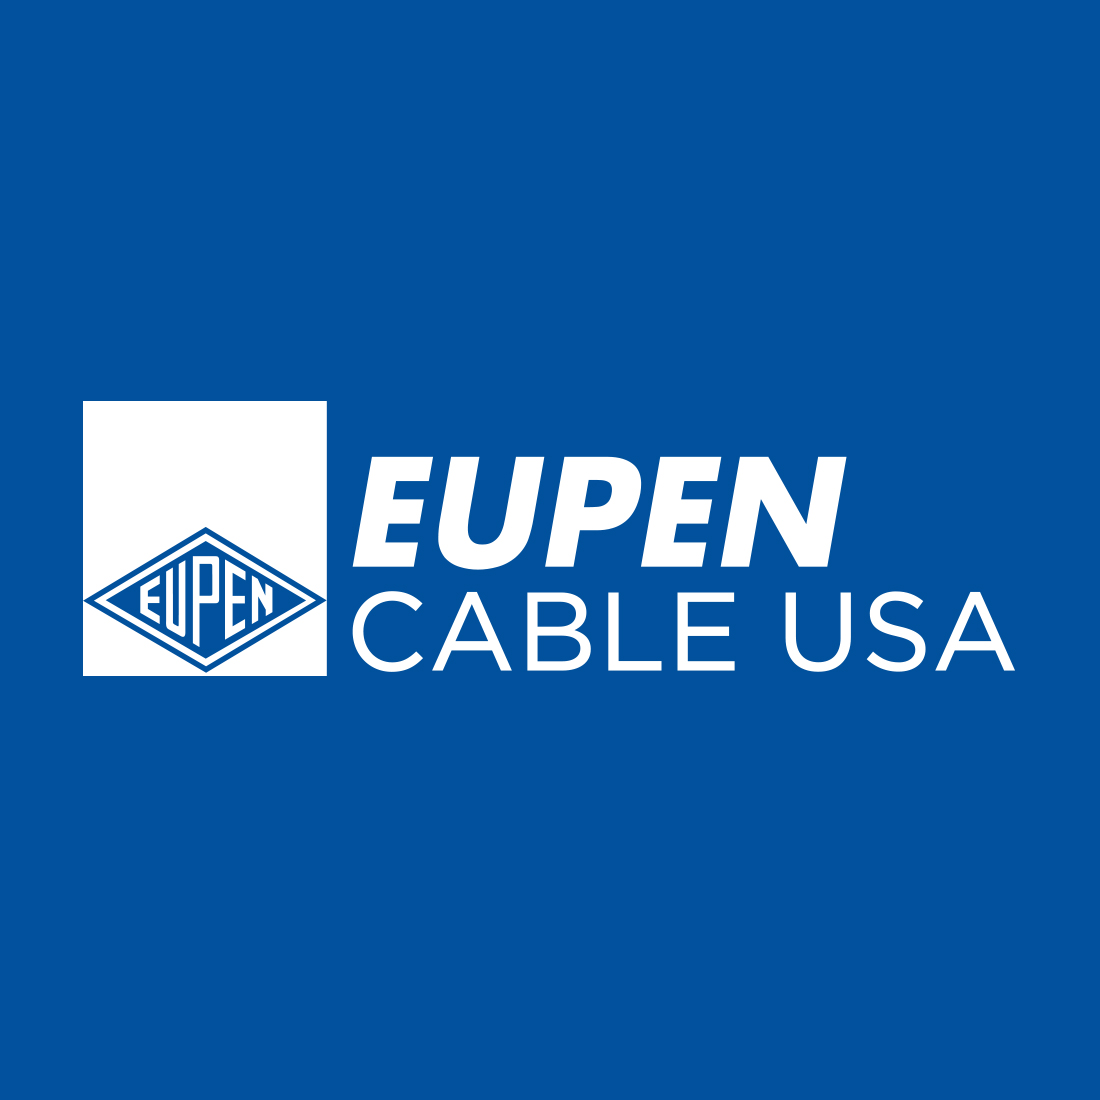 Eupen Cable USA